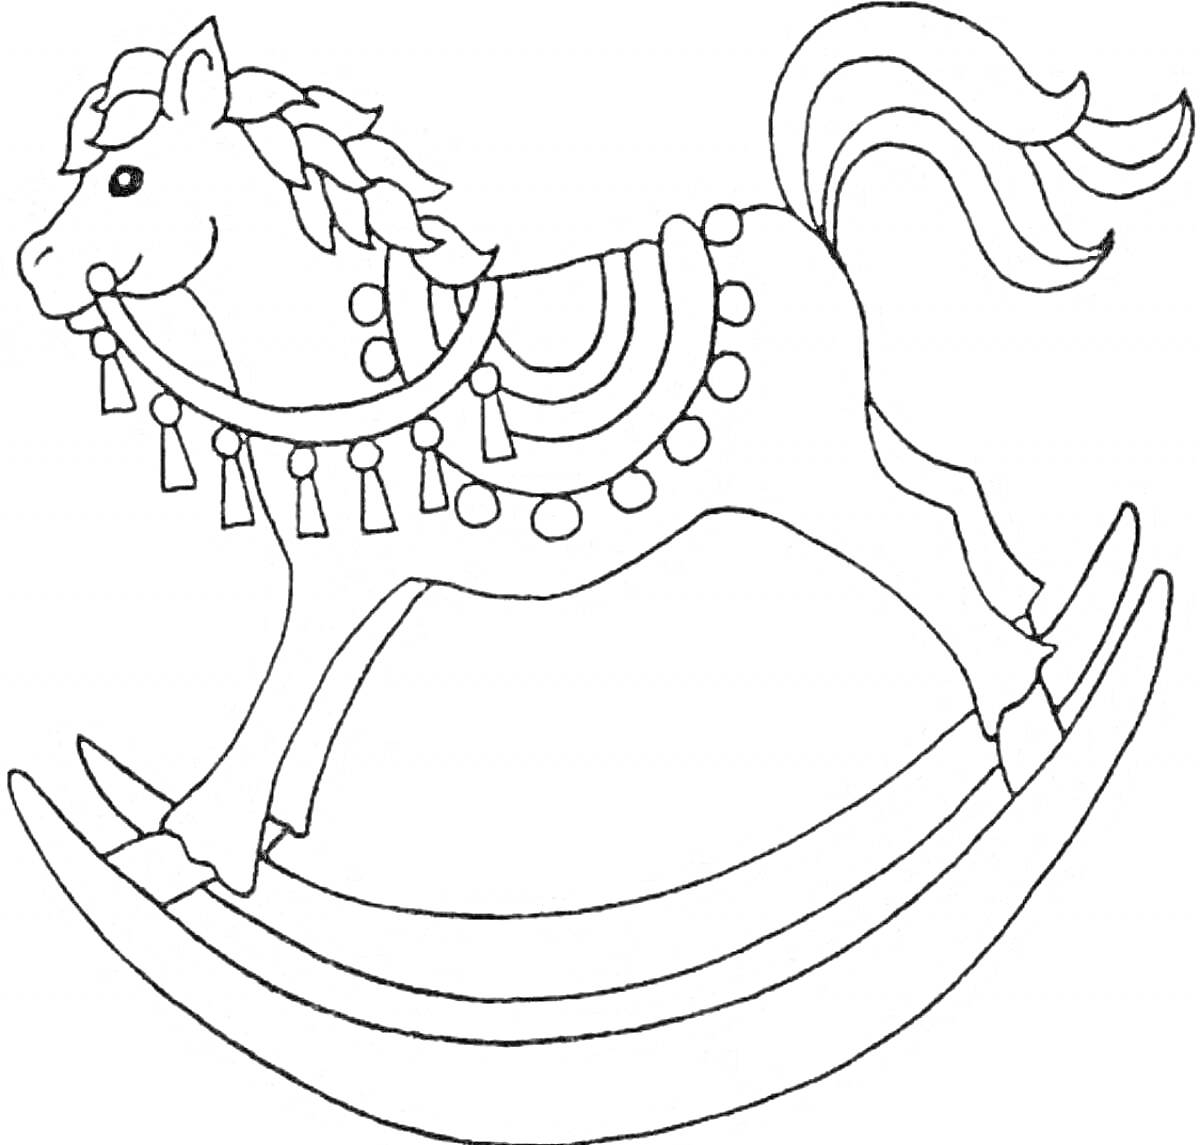 Раскраска Раскраска с городецкой лошадкой с декоративной сбруей на основе-качалке